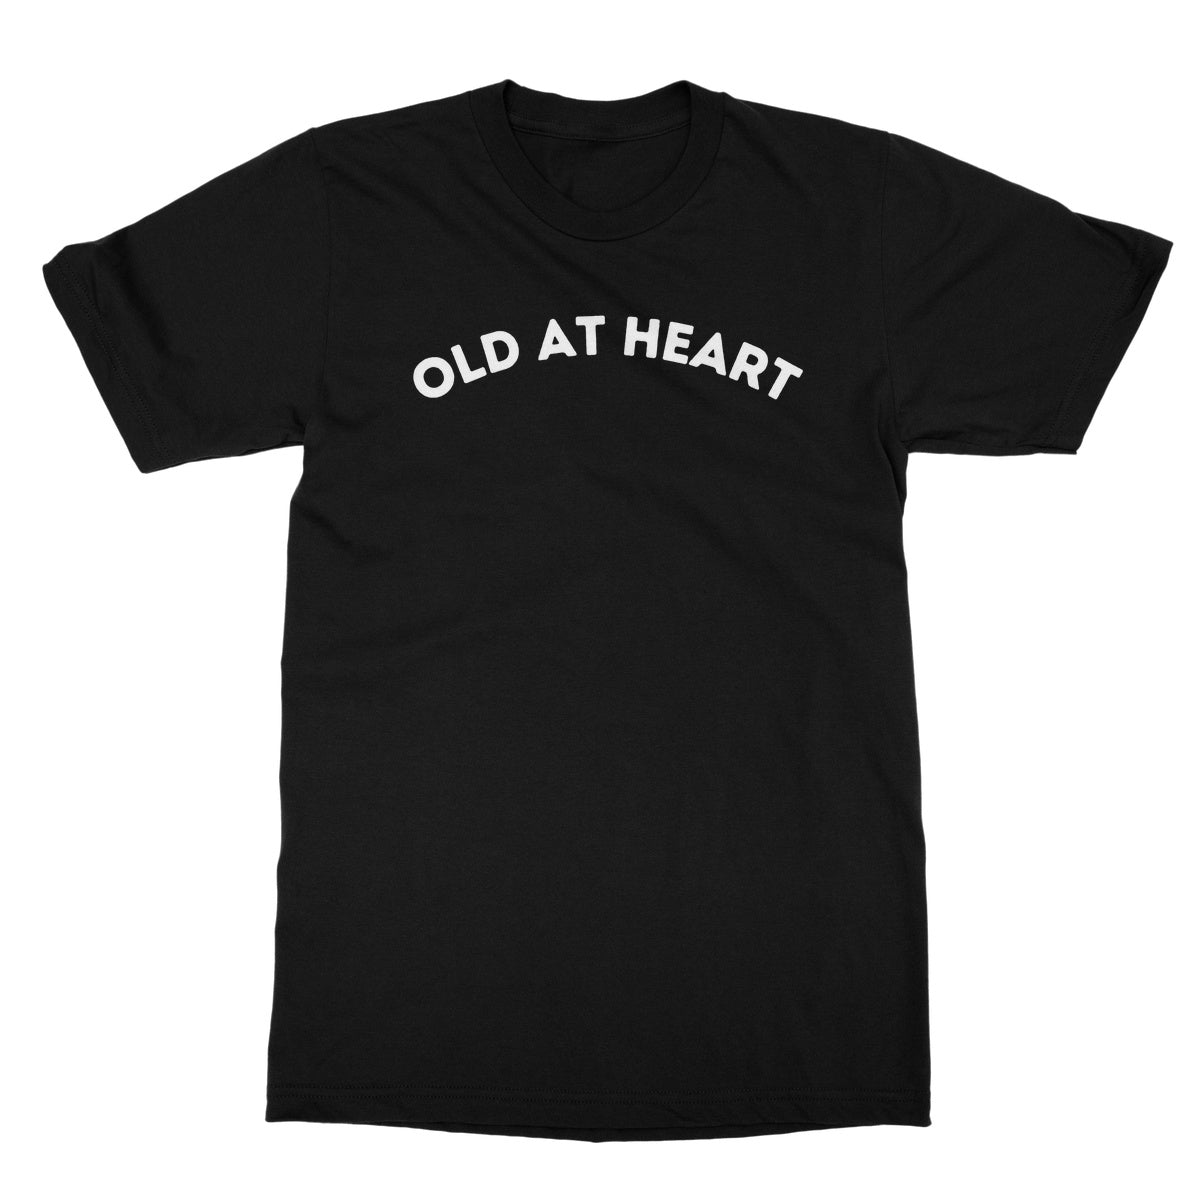 old at heart t shirt black